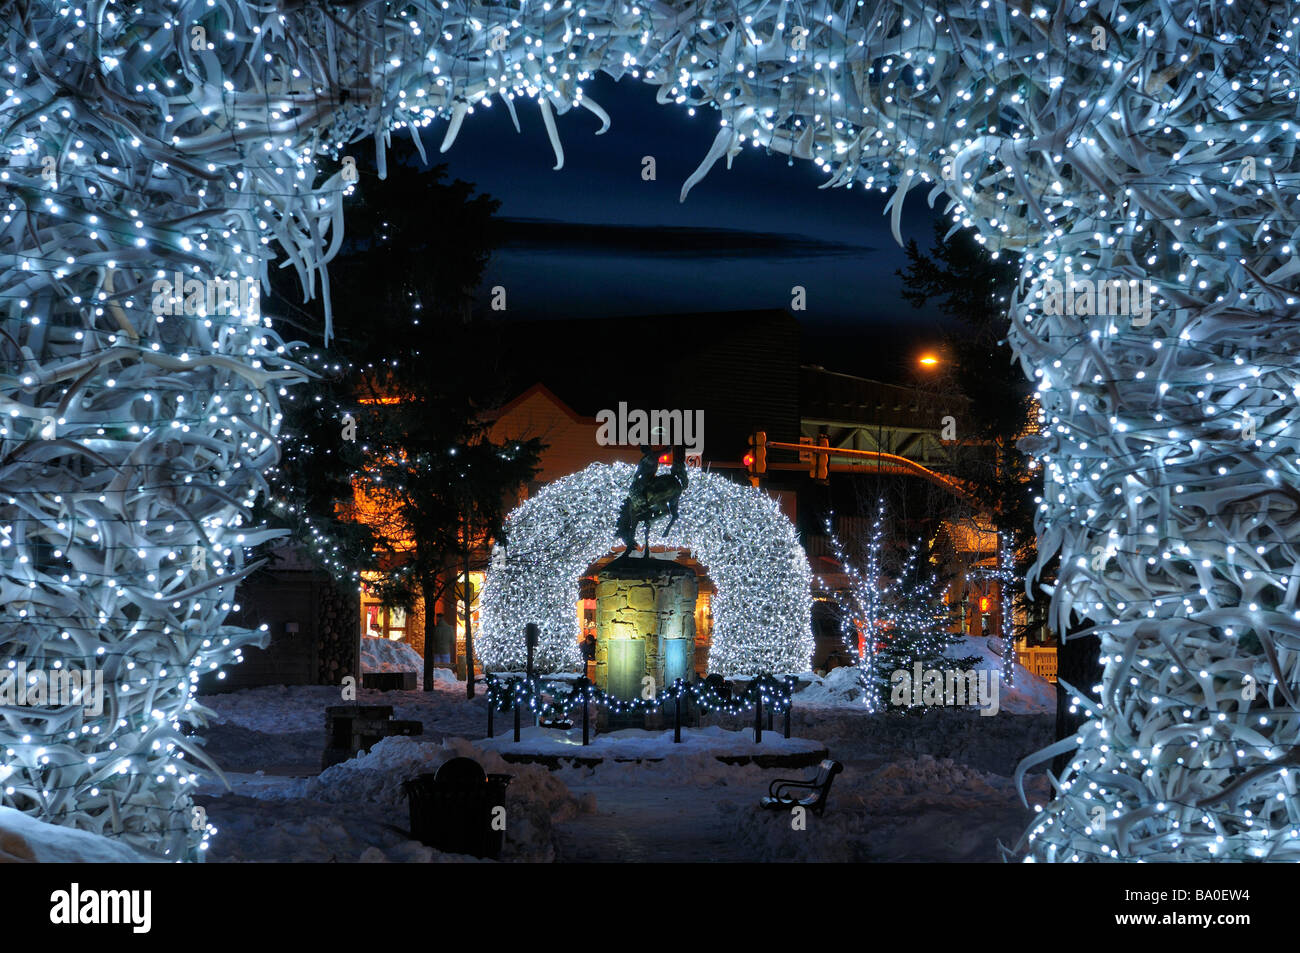 Helle Weihnachtsbeleuchtung auf Elch Geweih Bögen in Jackson Wyoming USA Altstädter Ring im Winter in der Dämmerung mit Cowboy auf bucking Broncho-statue Stockfoto